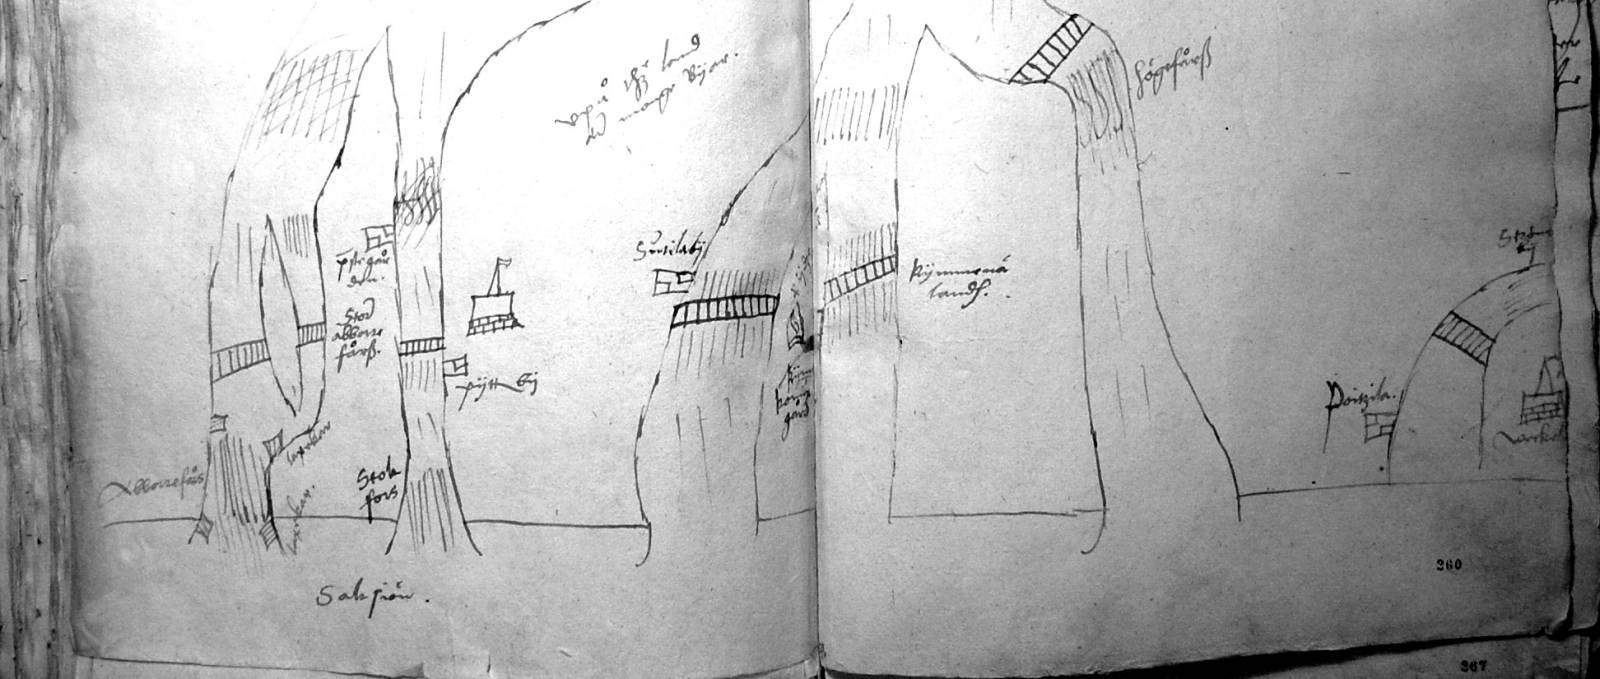 Jaakko Teitin piirros Suuren Rantatien silloista Kymijoen haaroissa 1555.